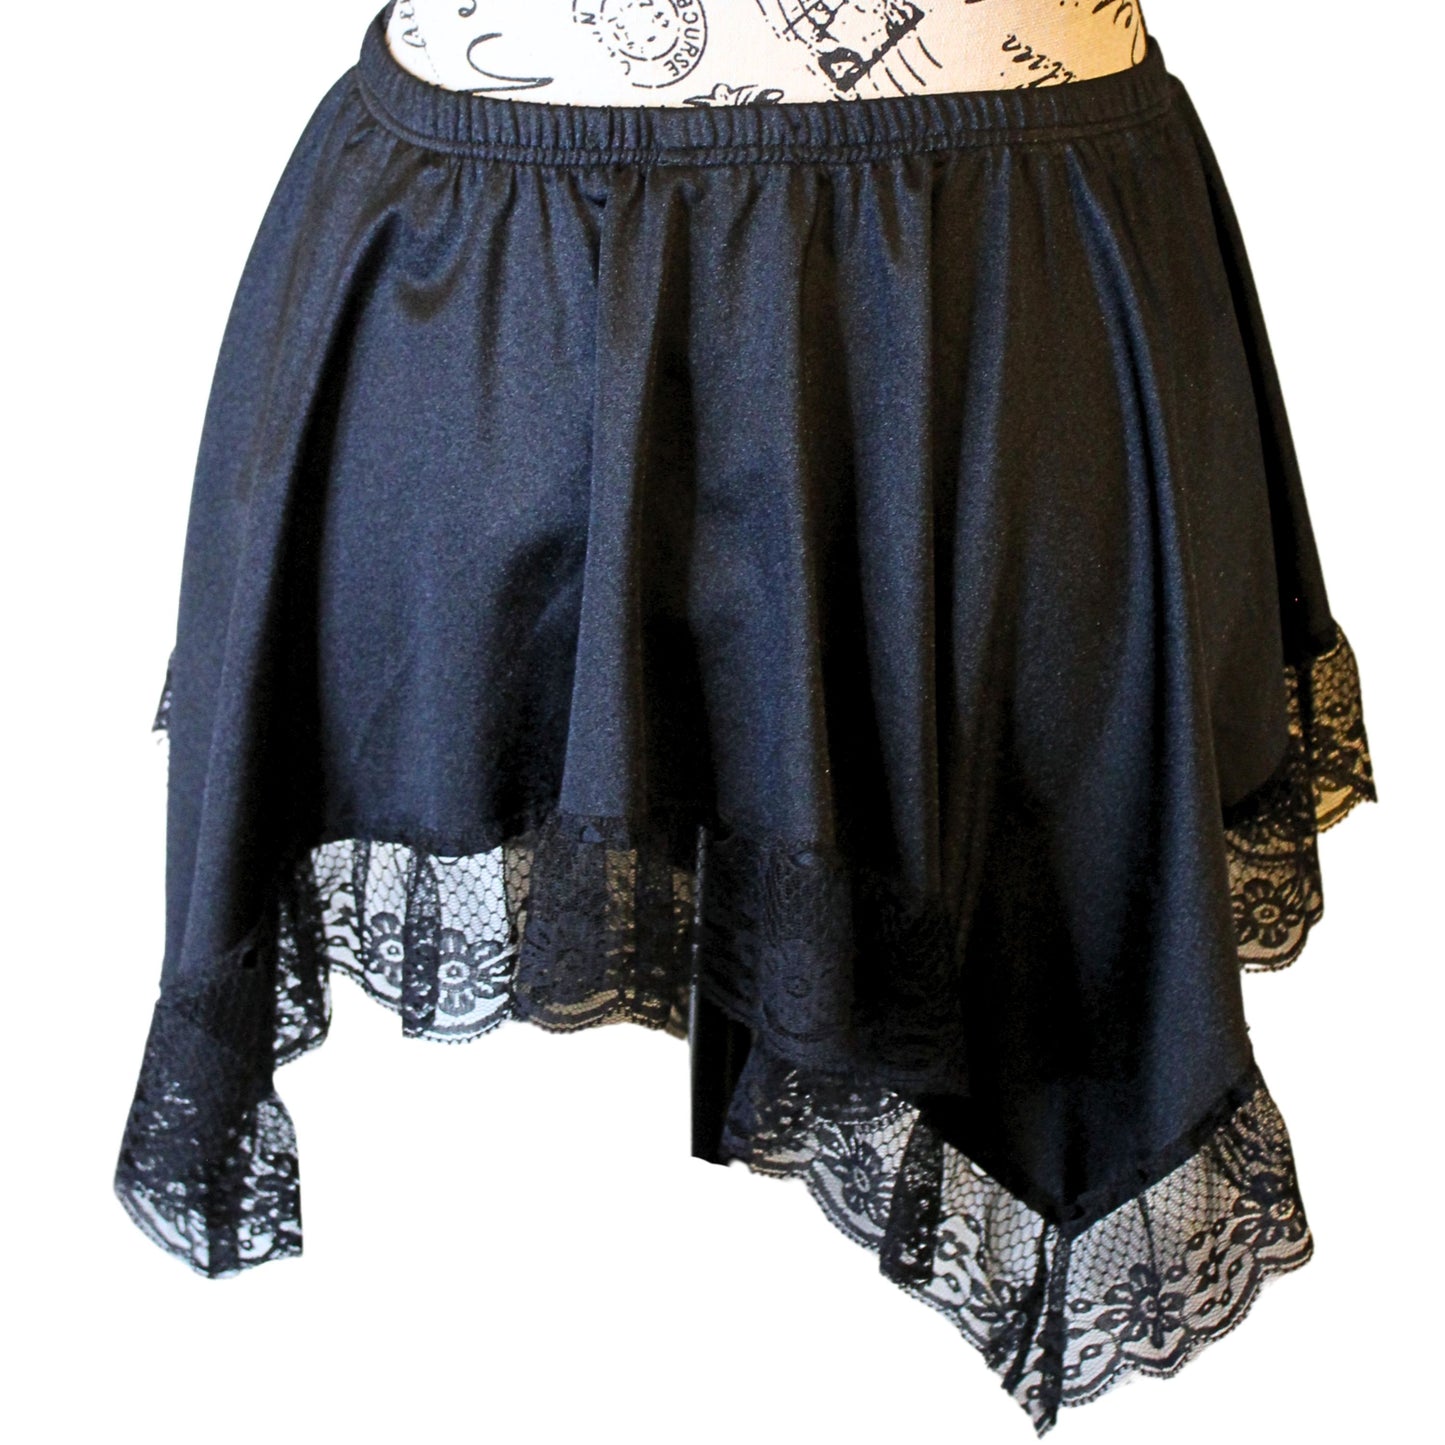 The VM Short Asymmetrical Skirt